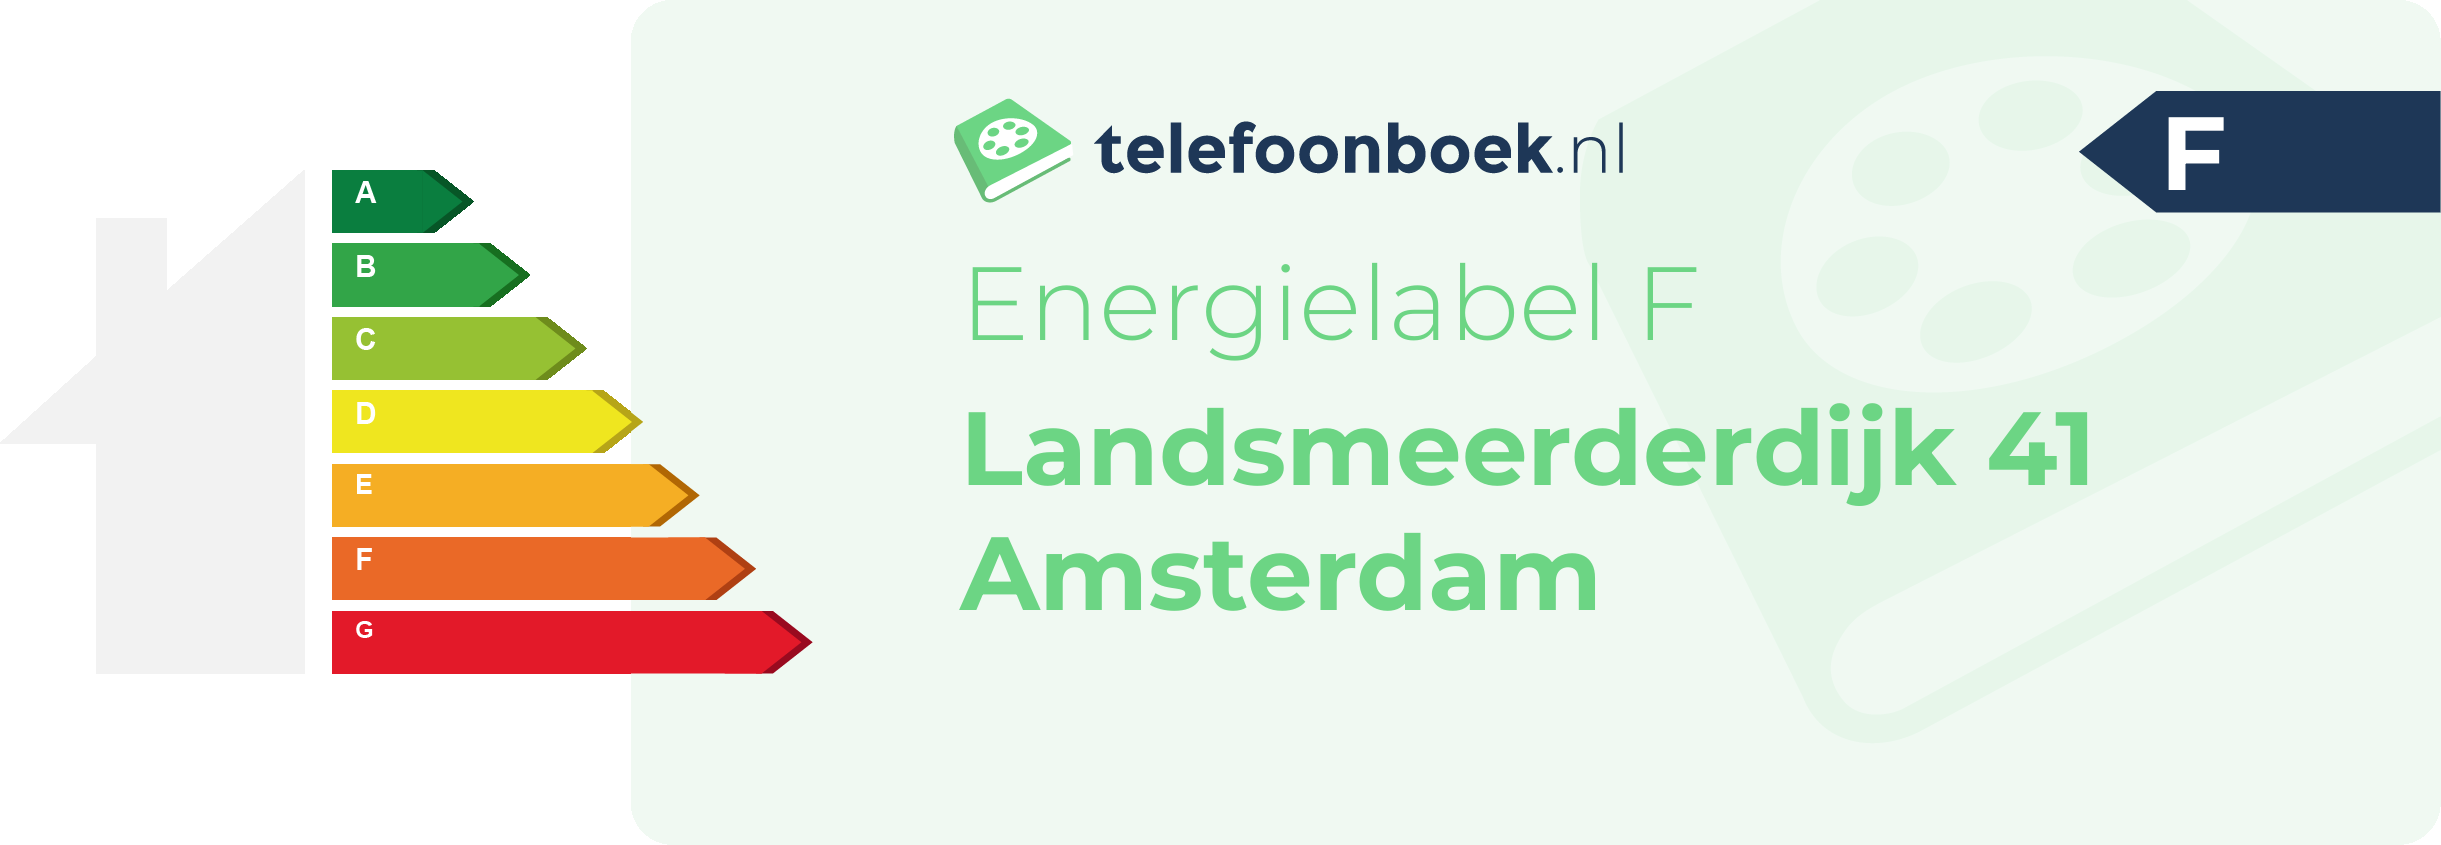 Energielabel Landsmeerderdijk 41 Amsterdam